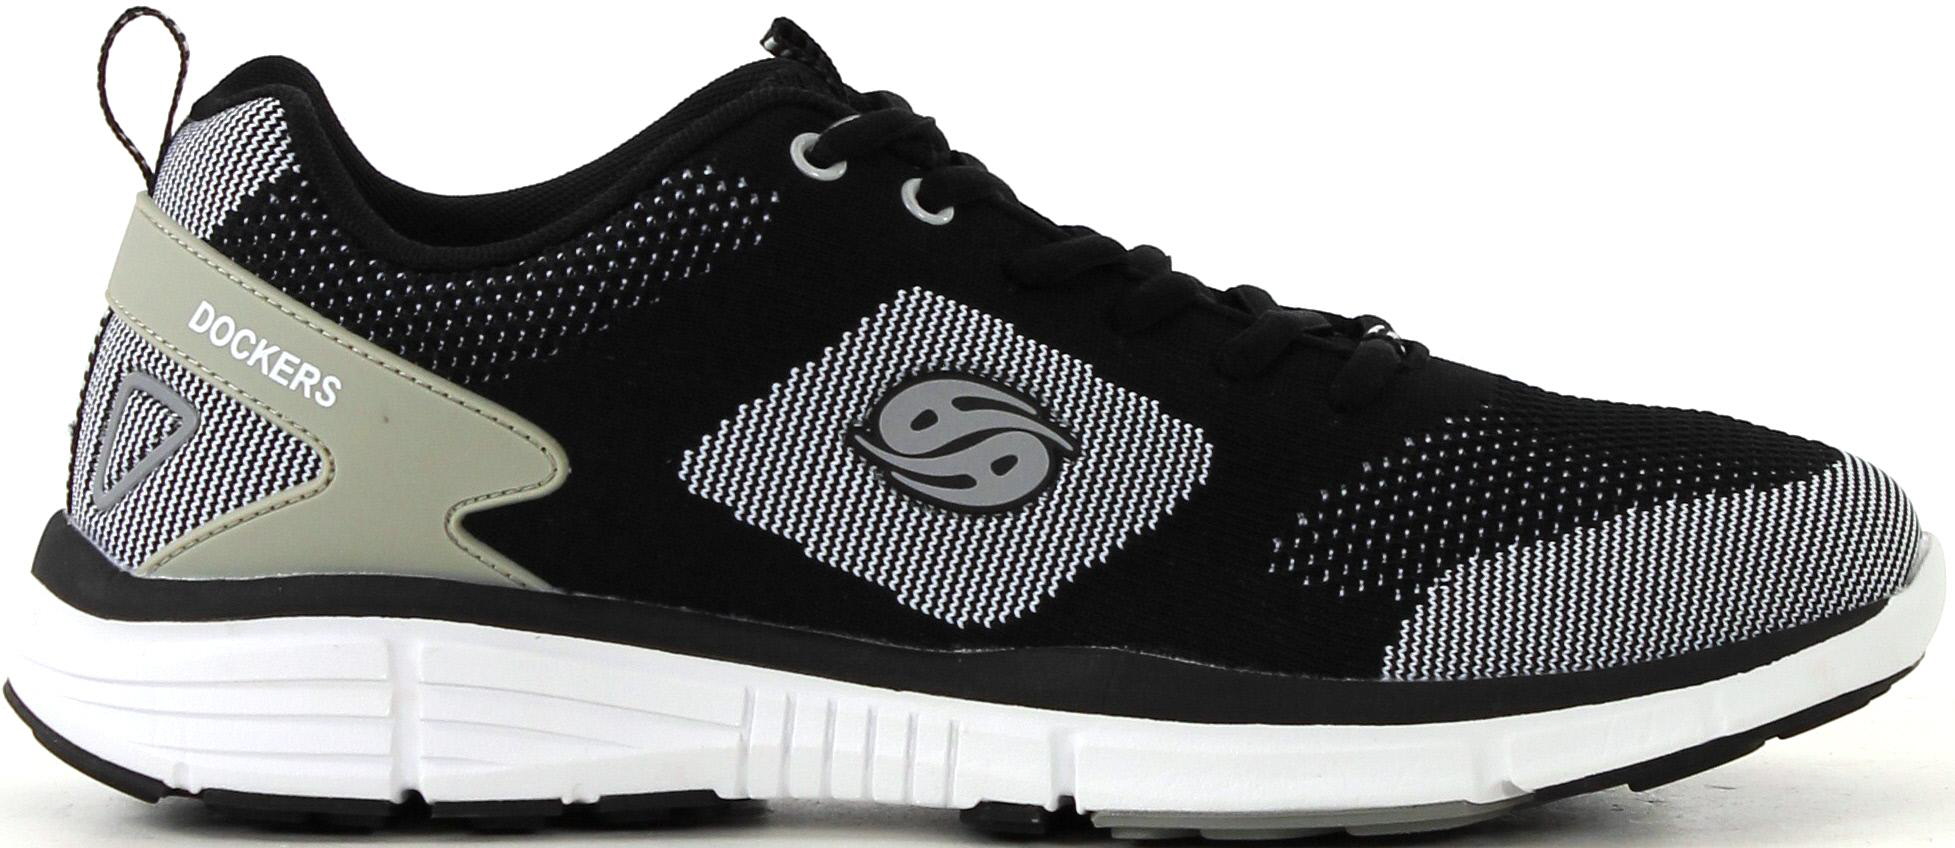 Dockers Sneakers 700211 black - Stilettoshop.eu webstore